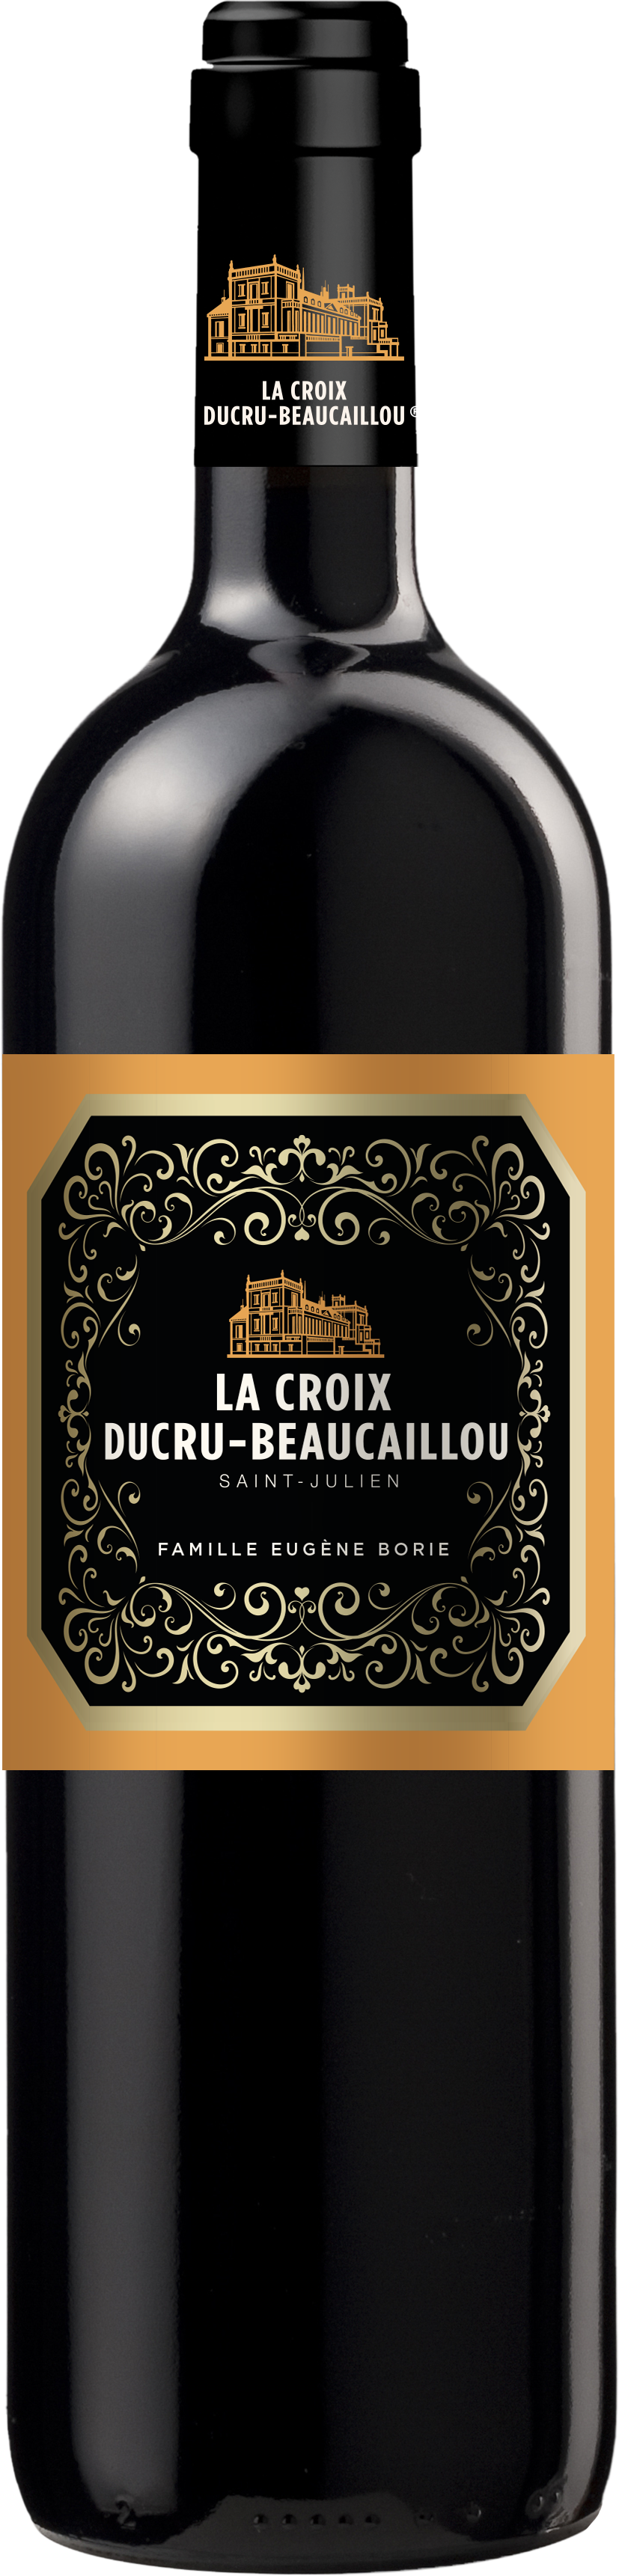 Köstlichalkoholisches - La Croix Ducru Beaucaillou - Onlineshop Ludwig von Kapff